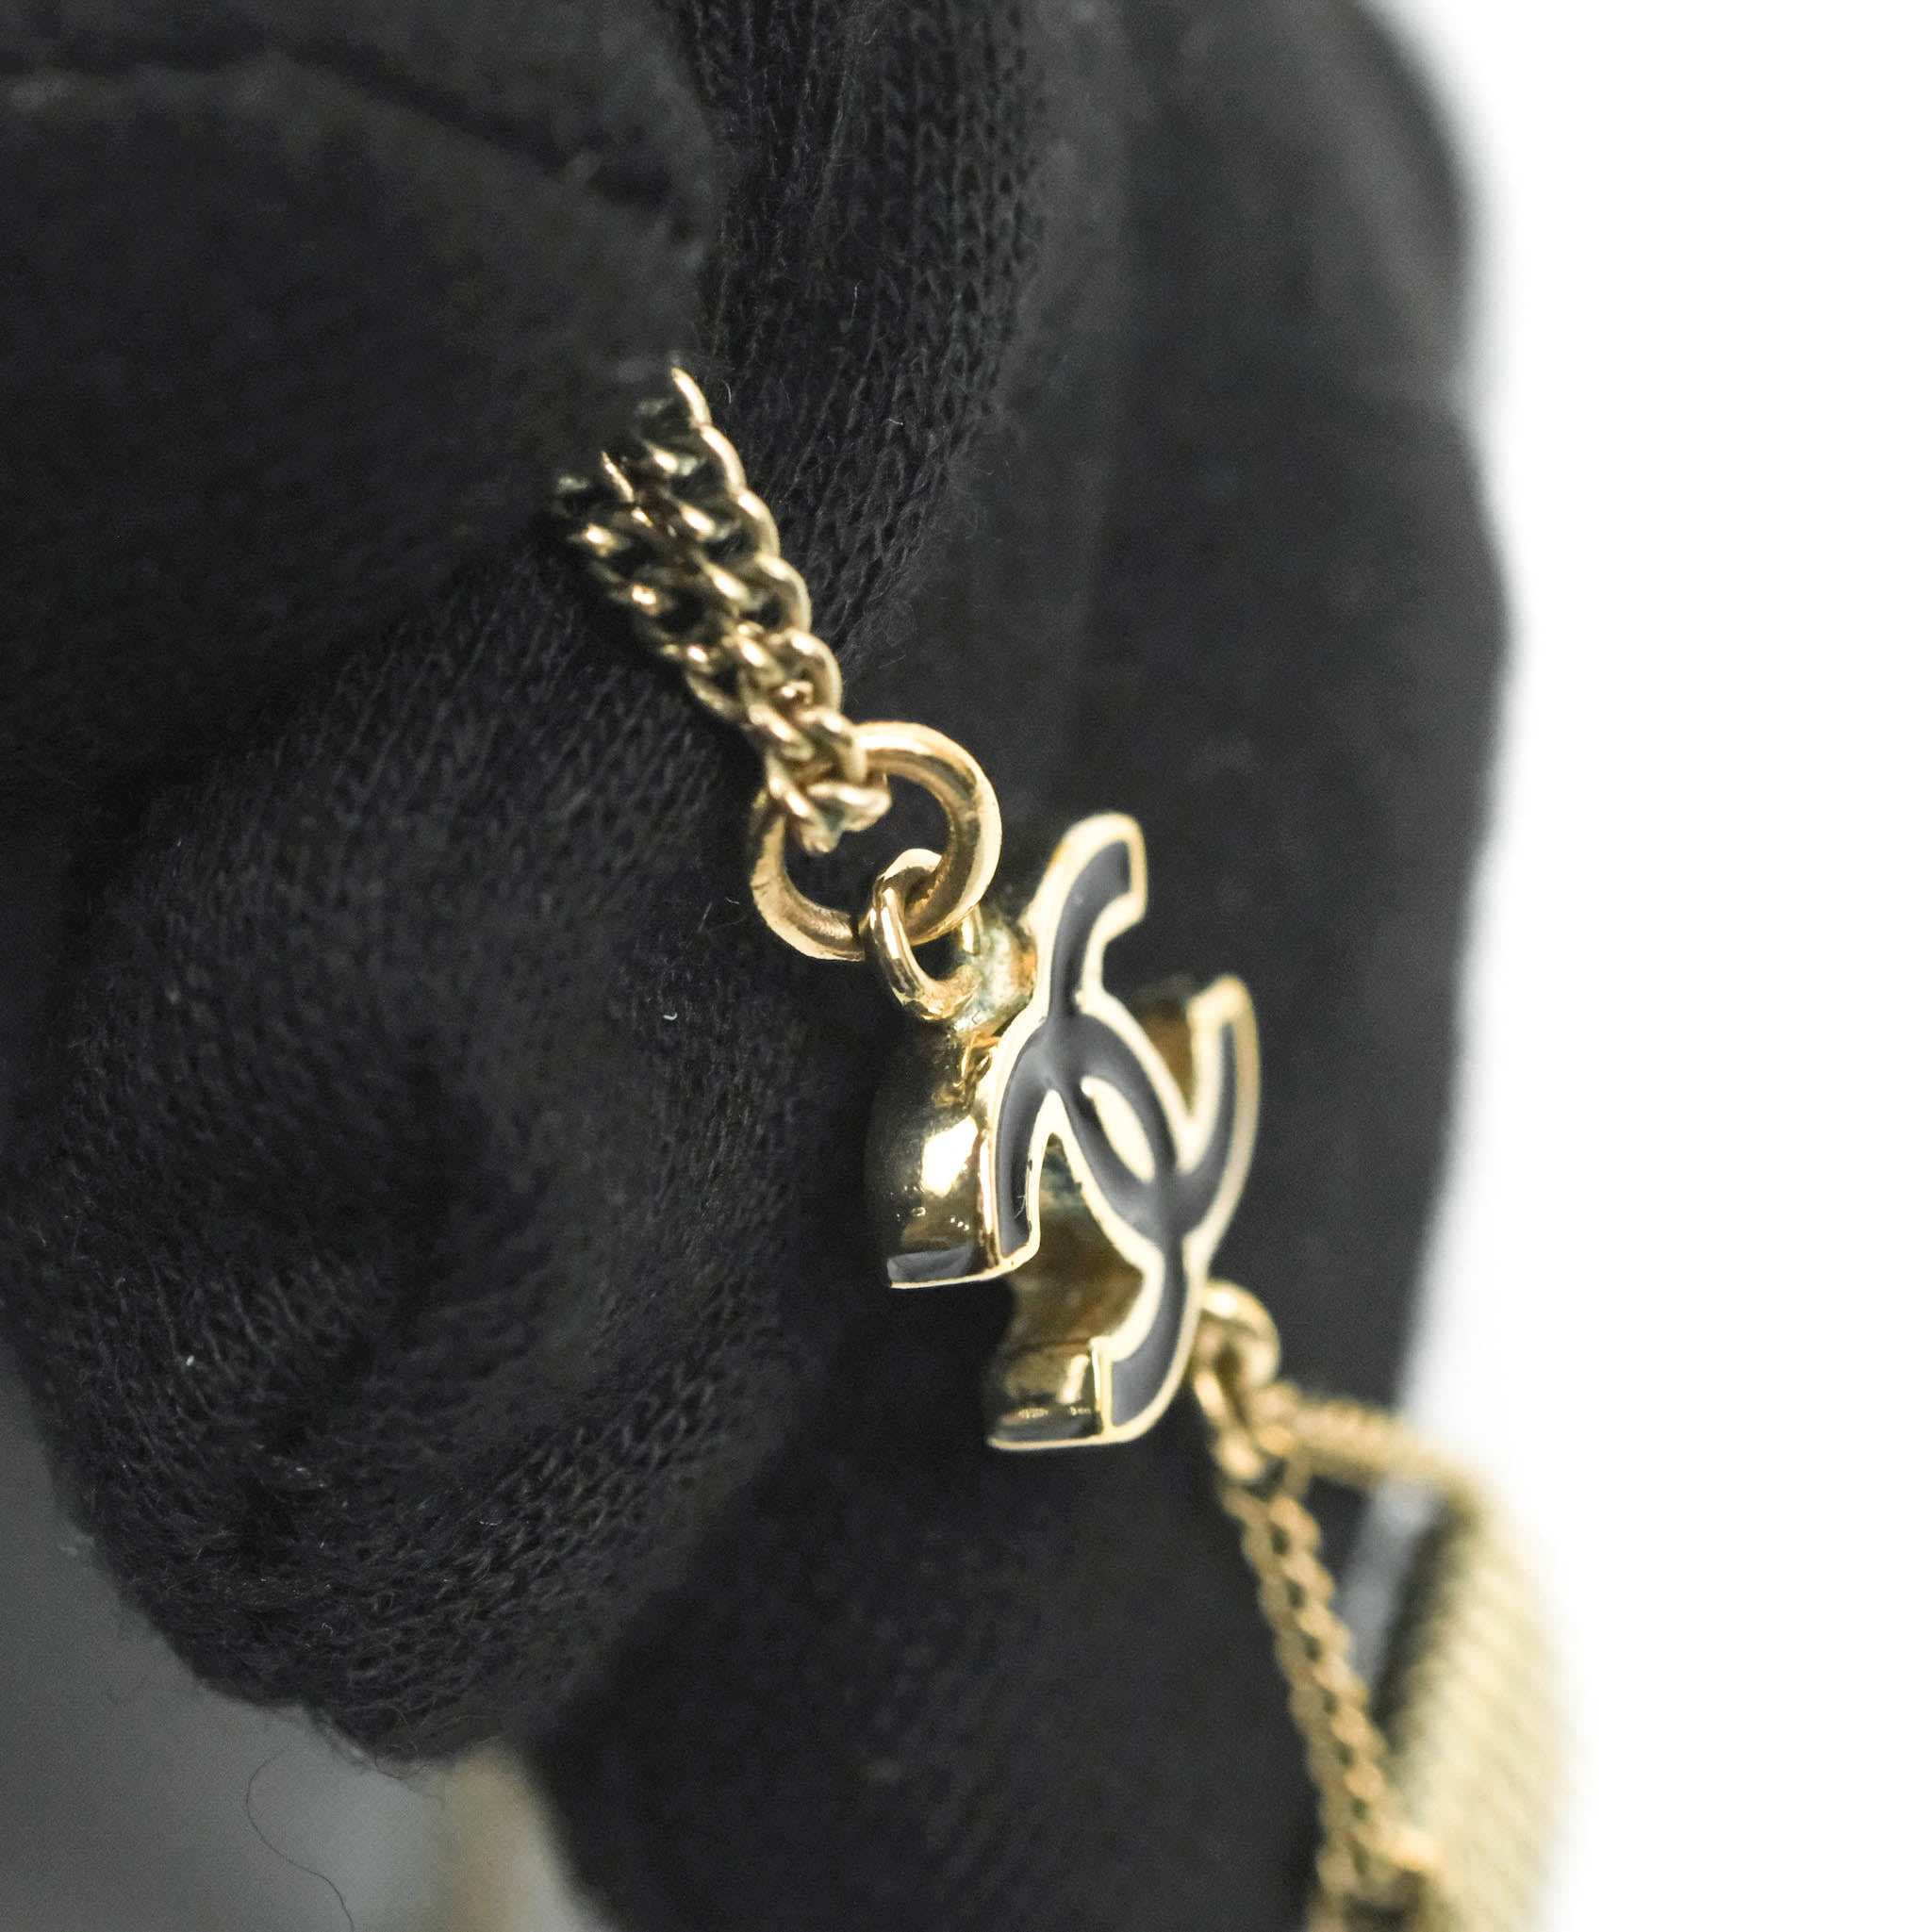 Chanel CC Black Enamel Flap Bag Charm Pendant Necklace Gold Tone